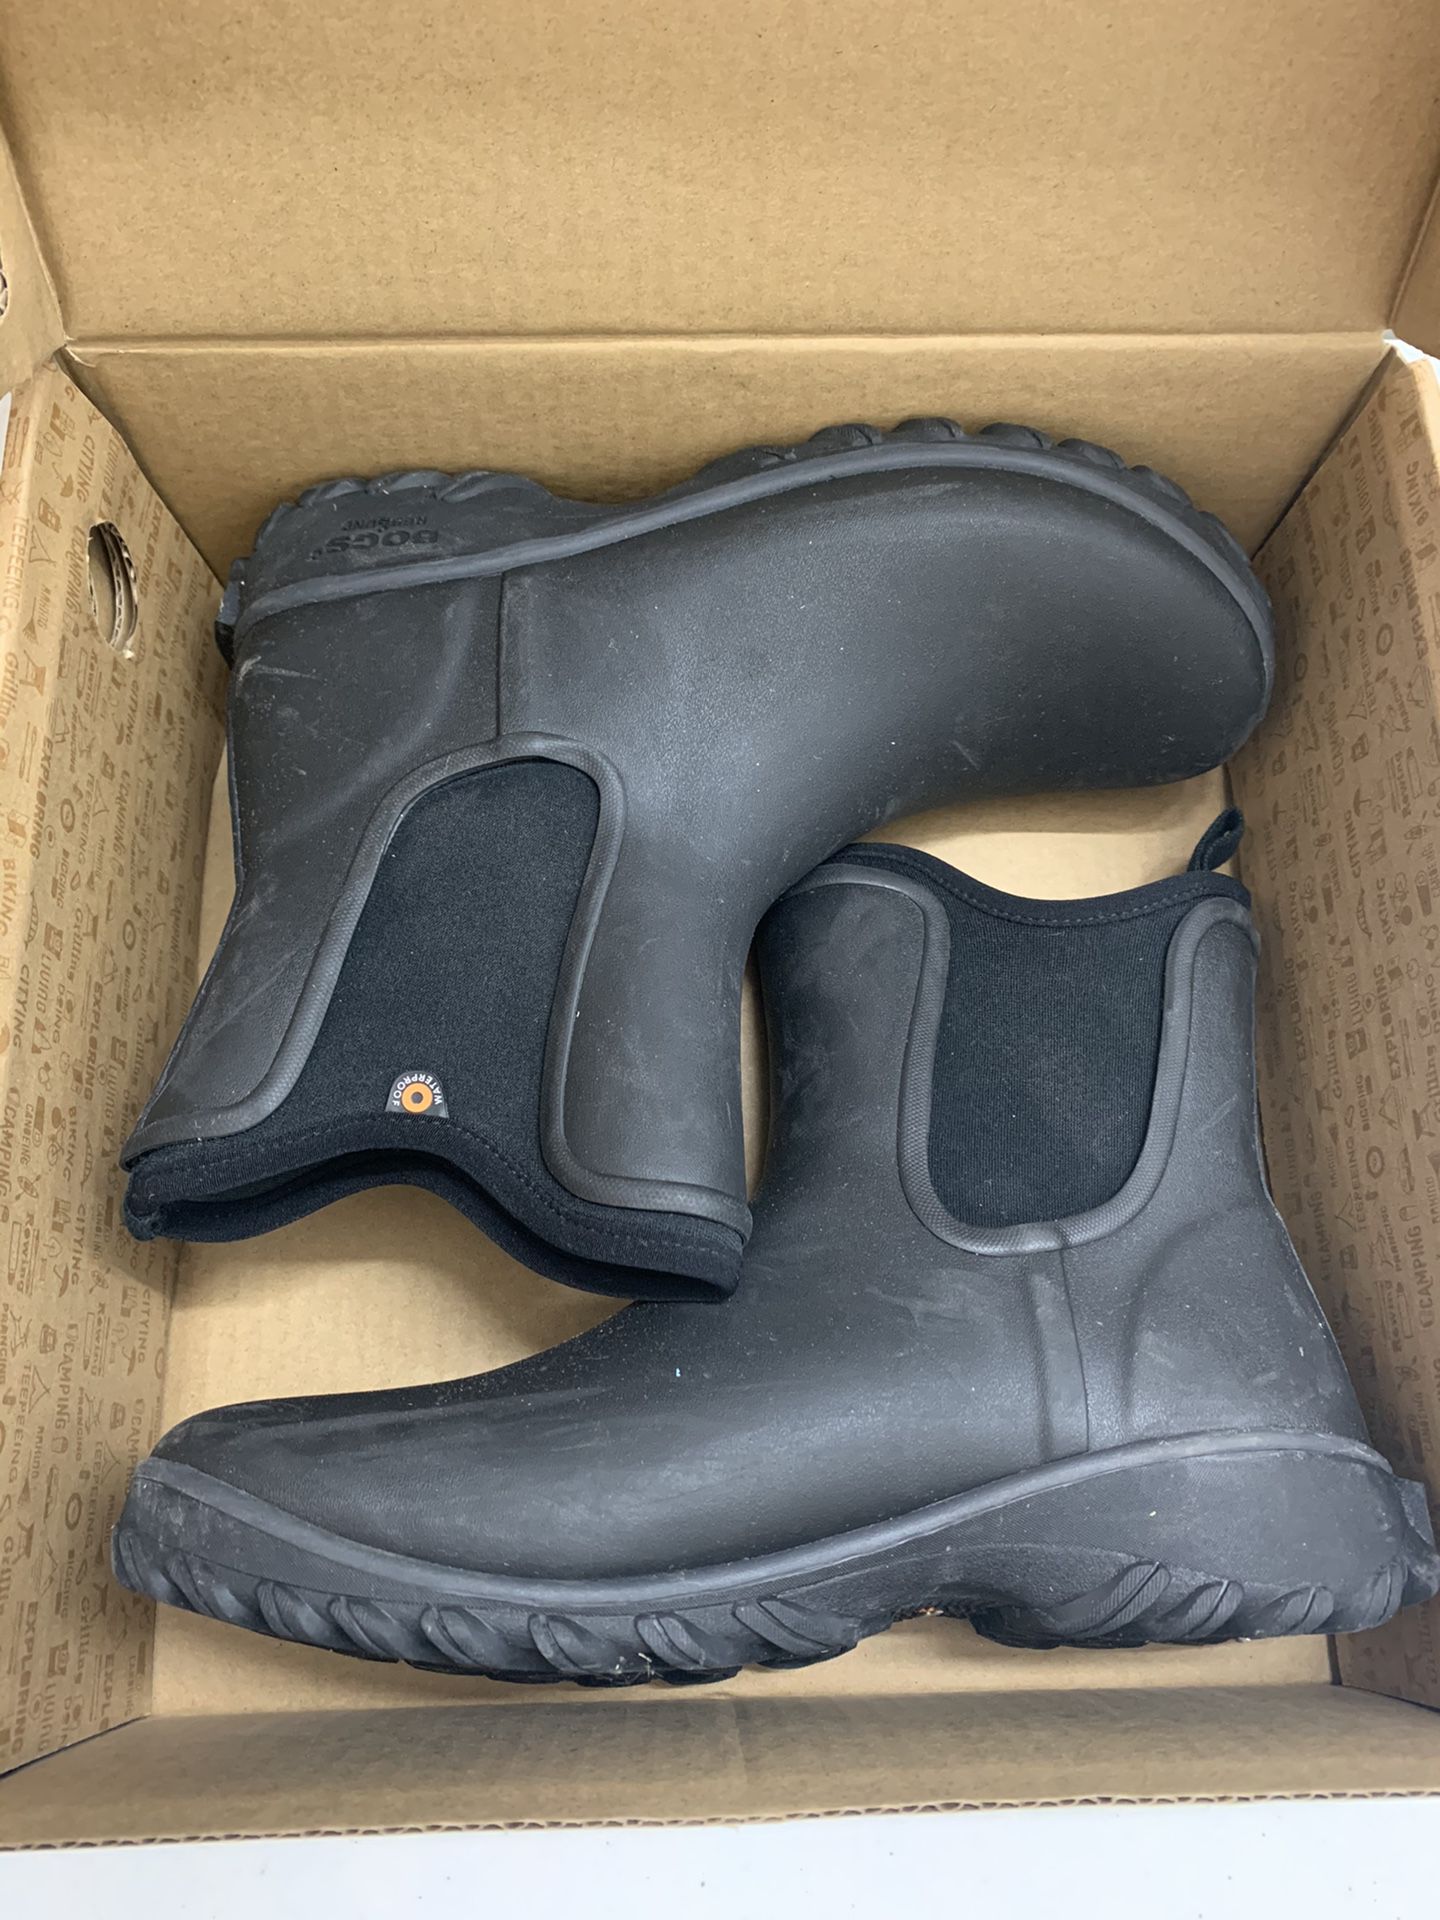 Bogs Waterproof Boots Size 8